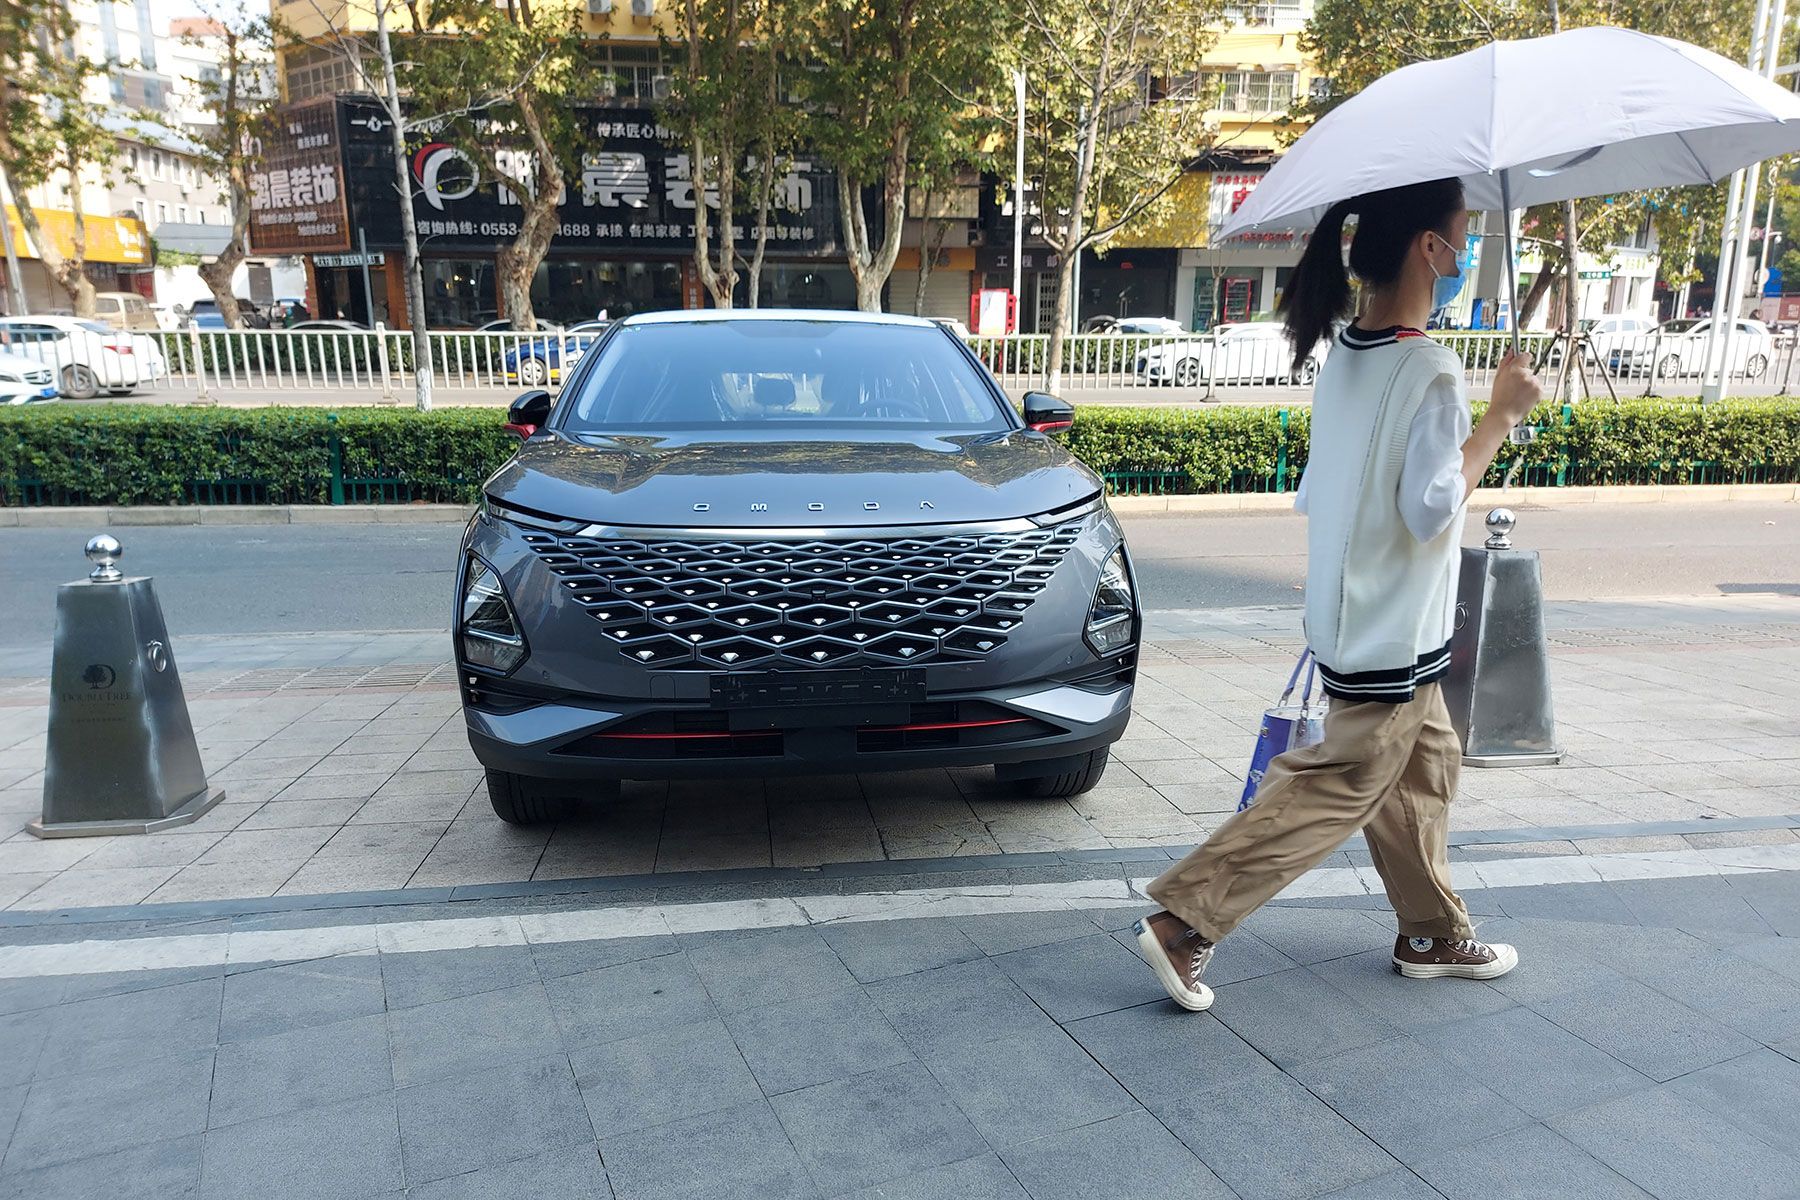 Lerohanják Magyarországot a kínai autók? 5